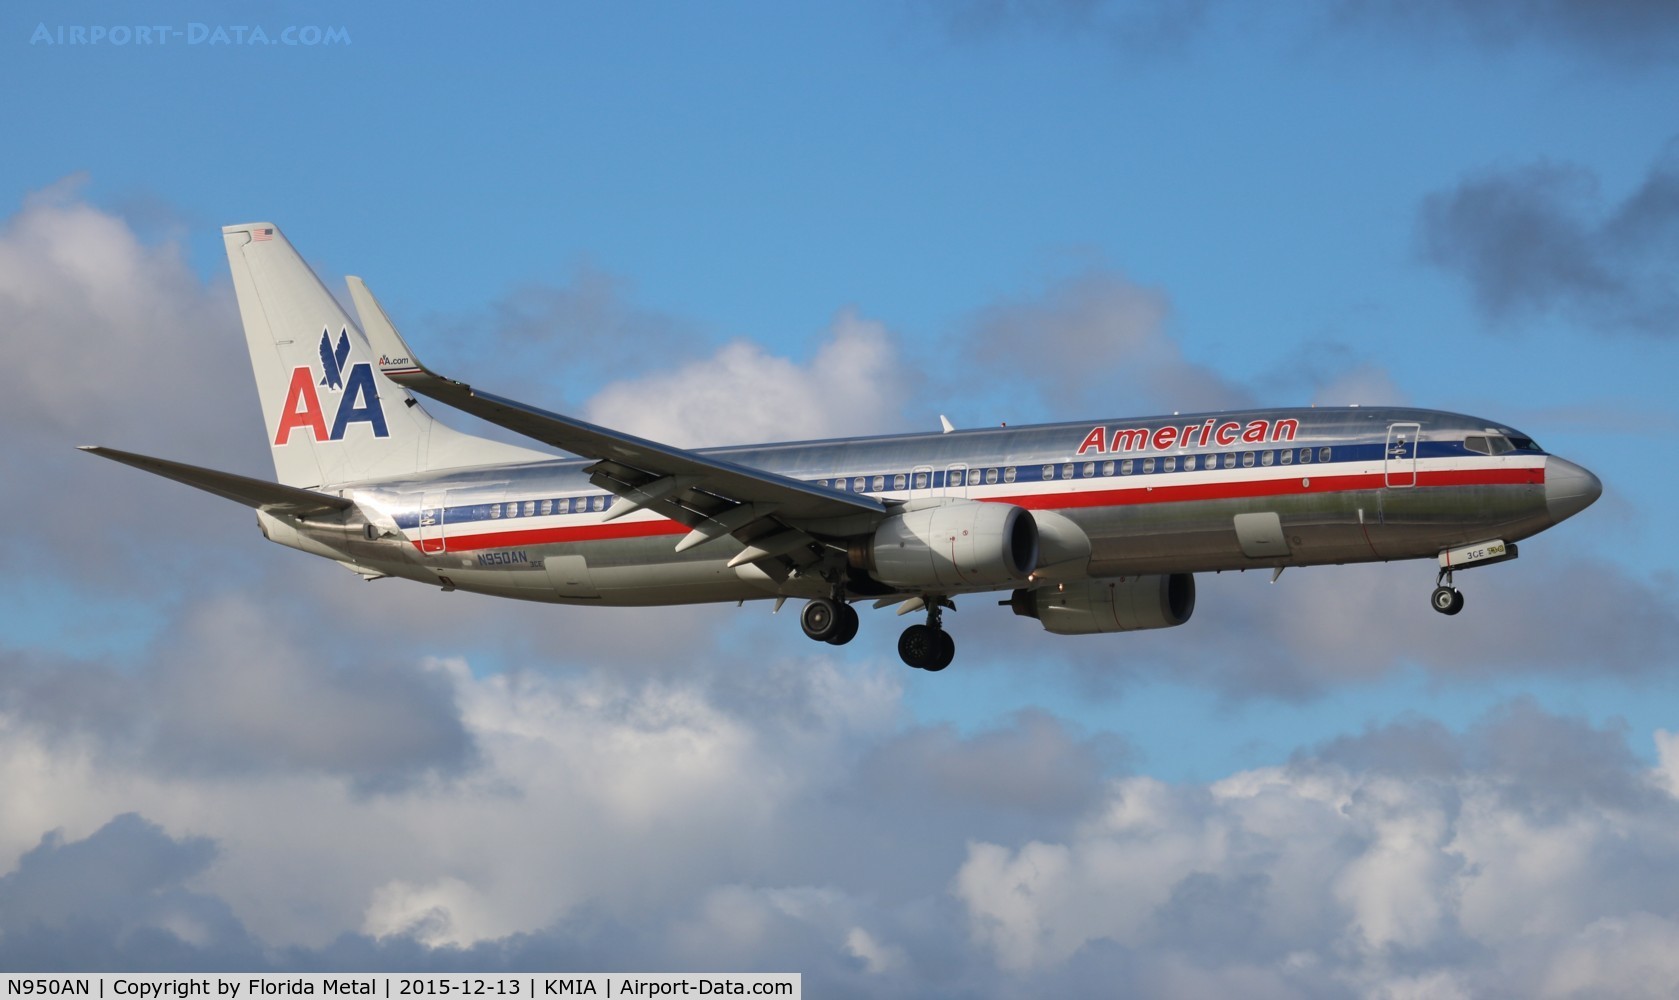 N950AN, 2000 Boeing 737-823 C/N 30087, American